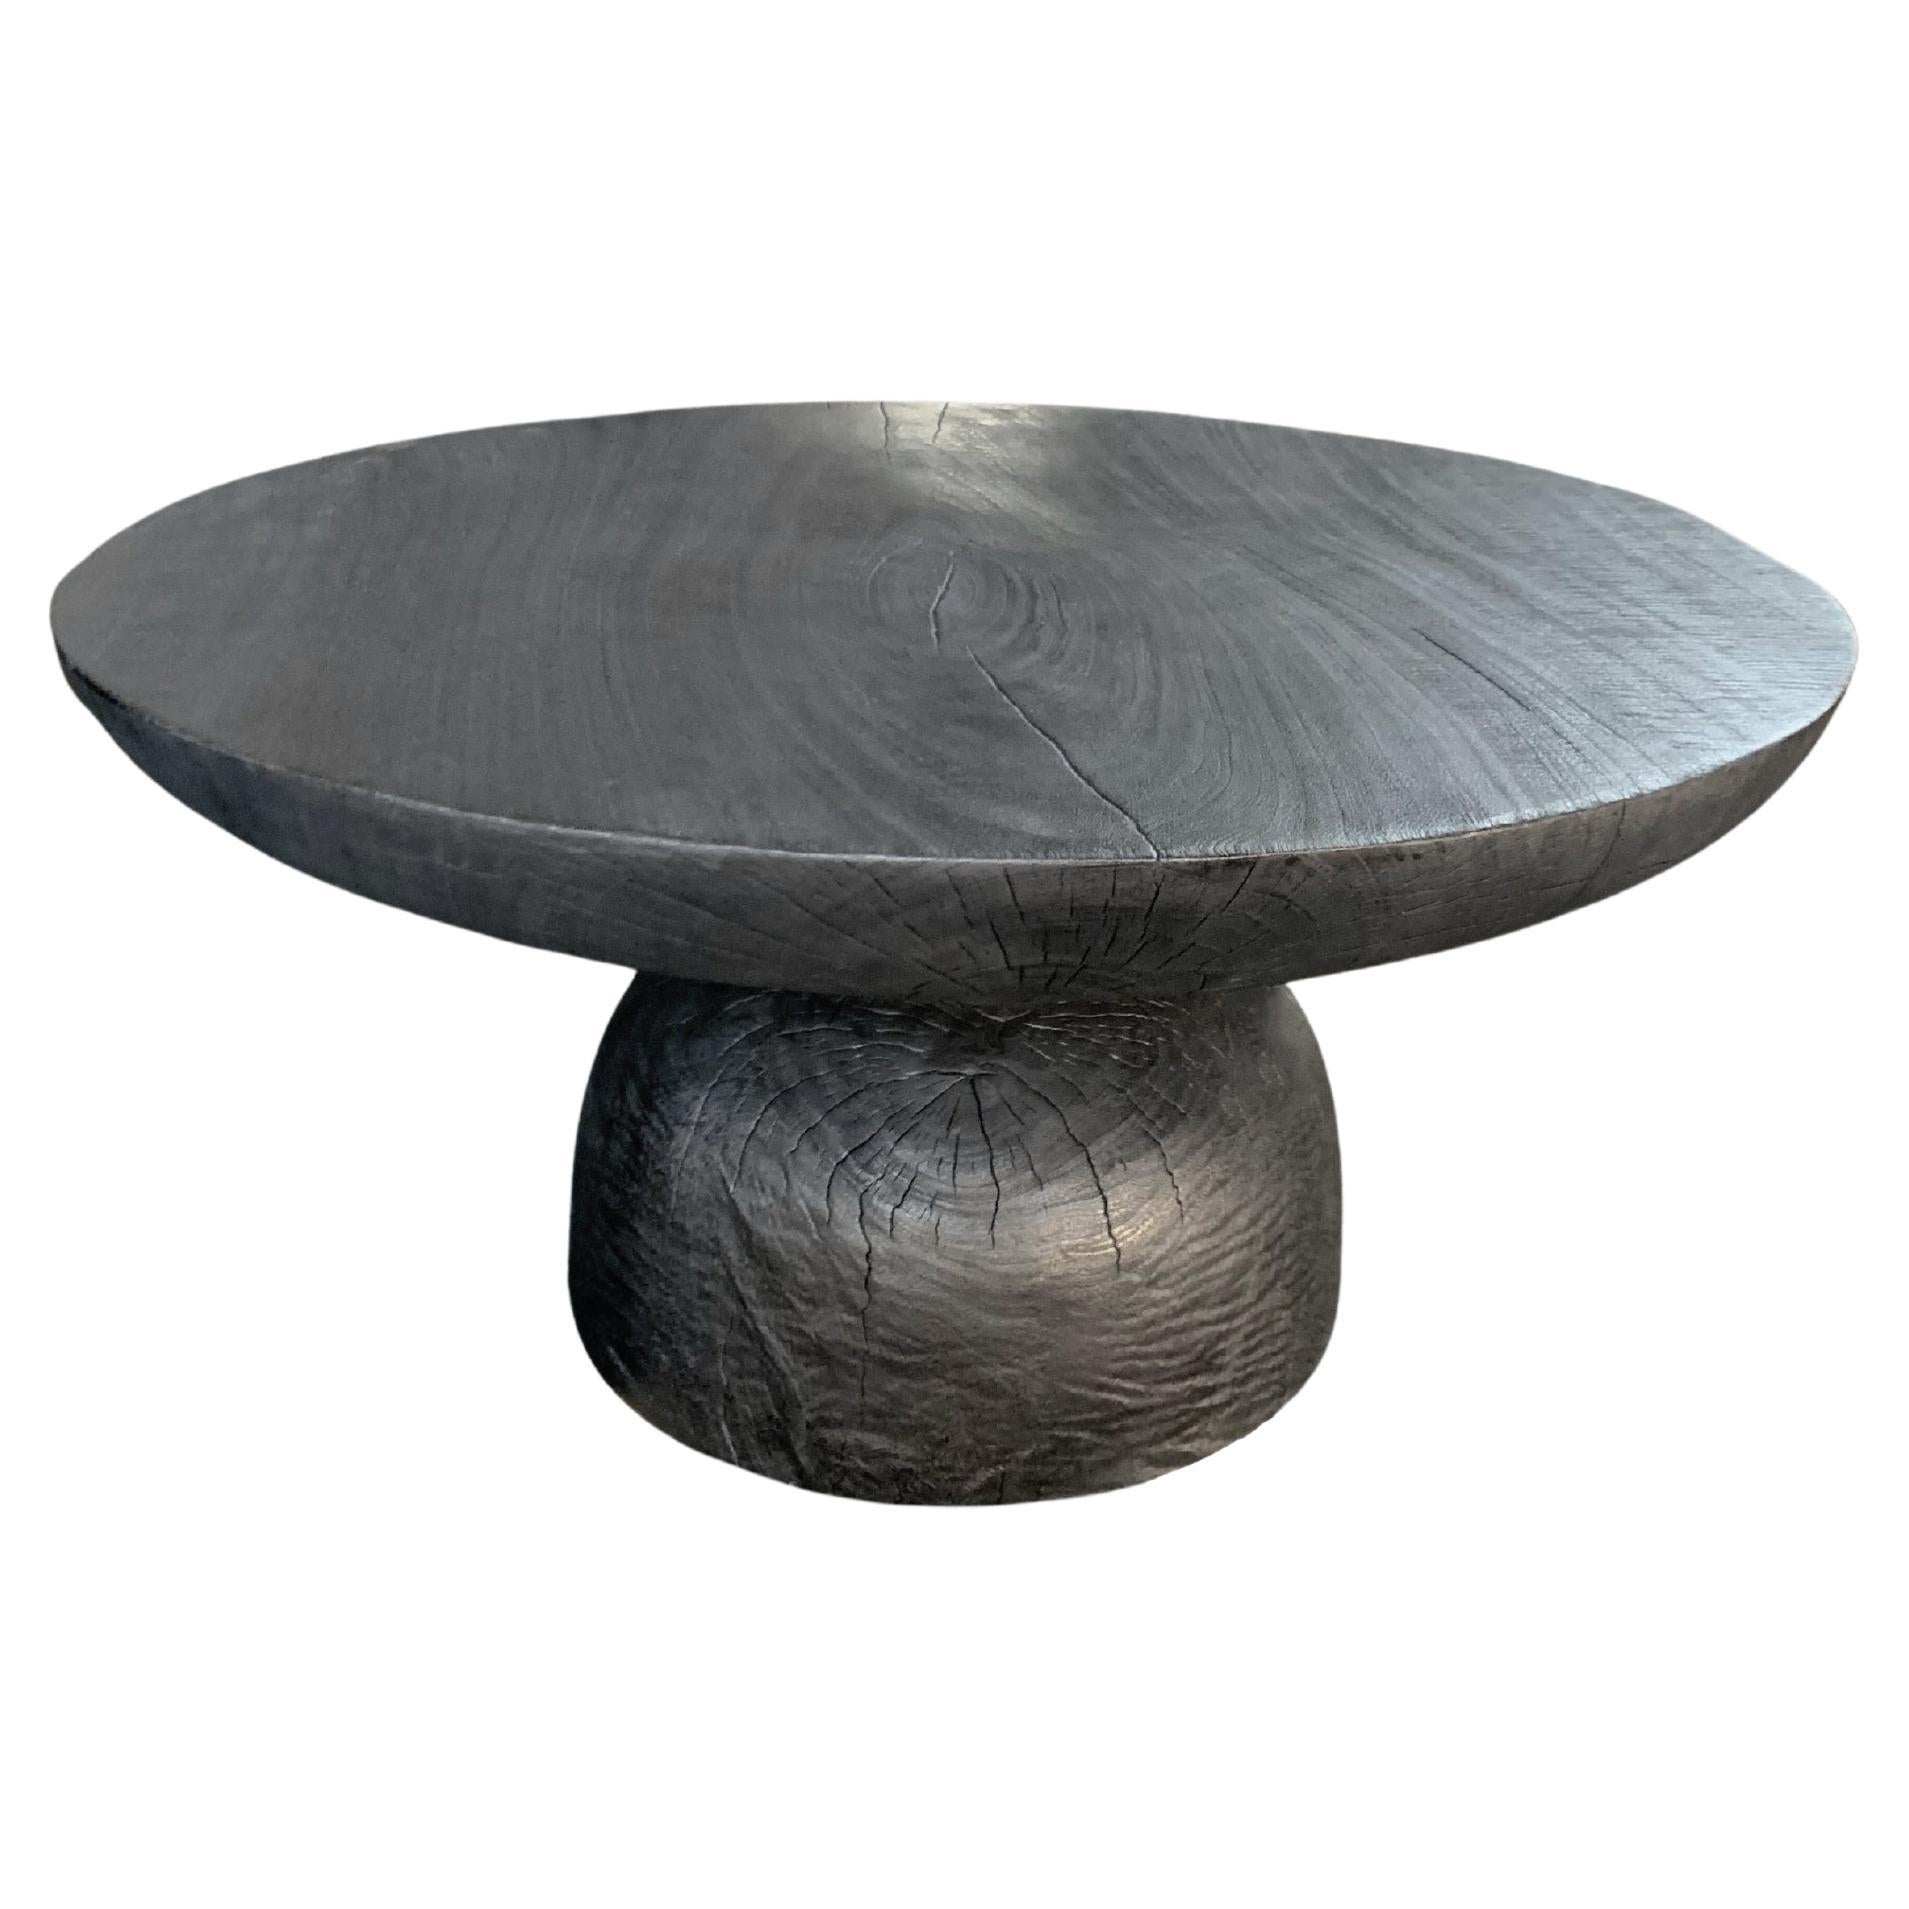 Skulpturaler runder Tisch Mangoholz, gebrannte Oberfläche, modern organisches Design